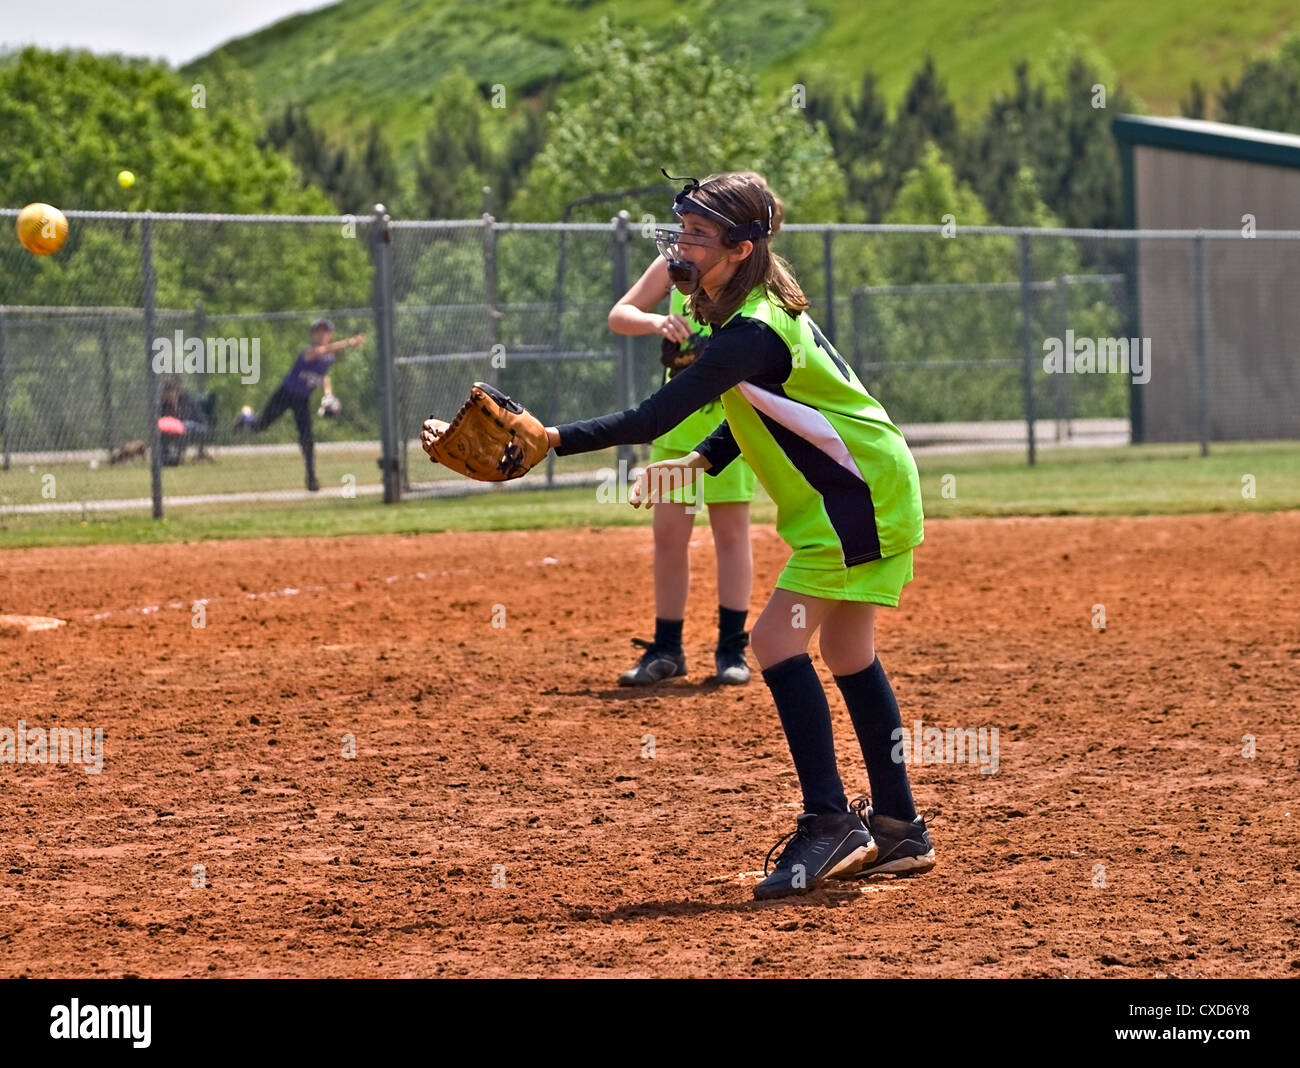 Junge Krug versuchen, einen Ball zu fangen, der während einem Softball-Spiel wieder auf ihr getroffen wurde. Stockfoto